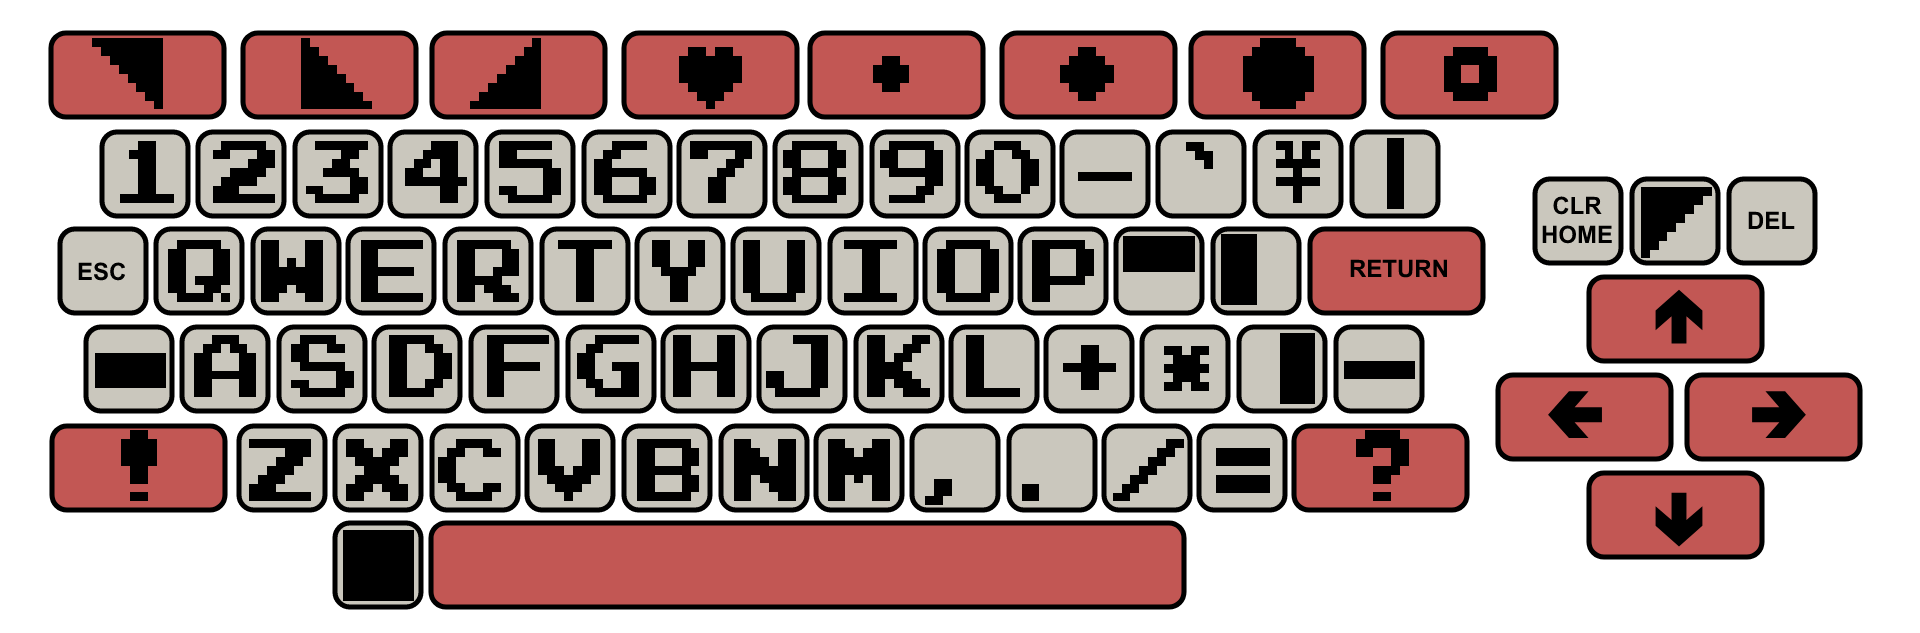 Si vous n'avez pas le clavier des années 80, une interface graphique permet de sélectionner les caractères à taper.